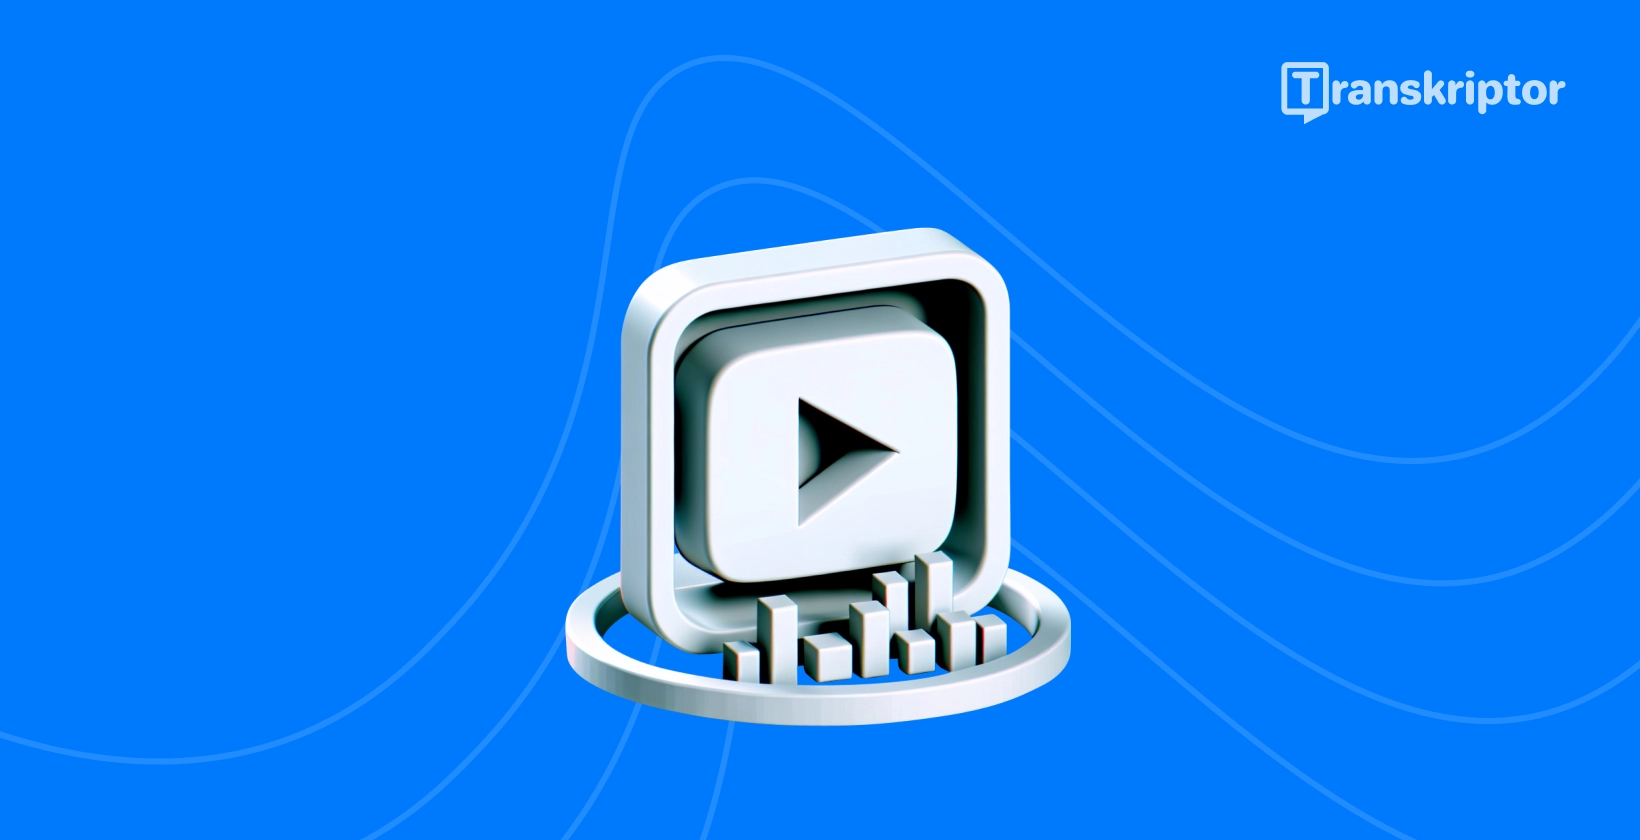 Afspil-knap og transskription visuel illustrerende metoder til at transskribere YouTube videoer effektivt.